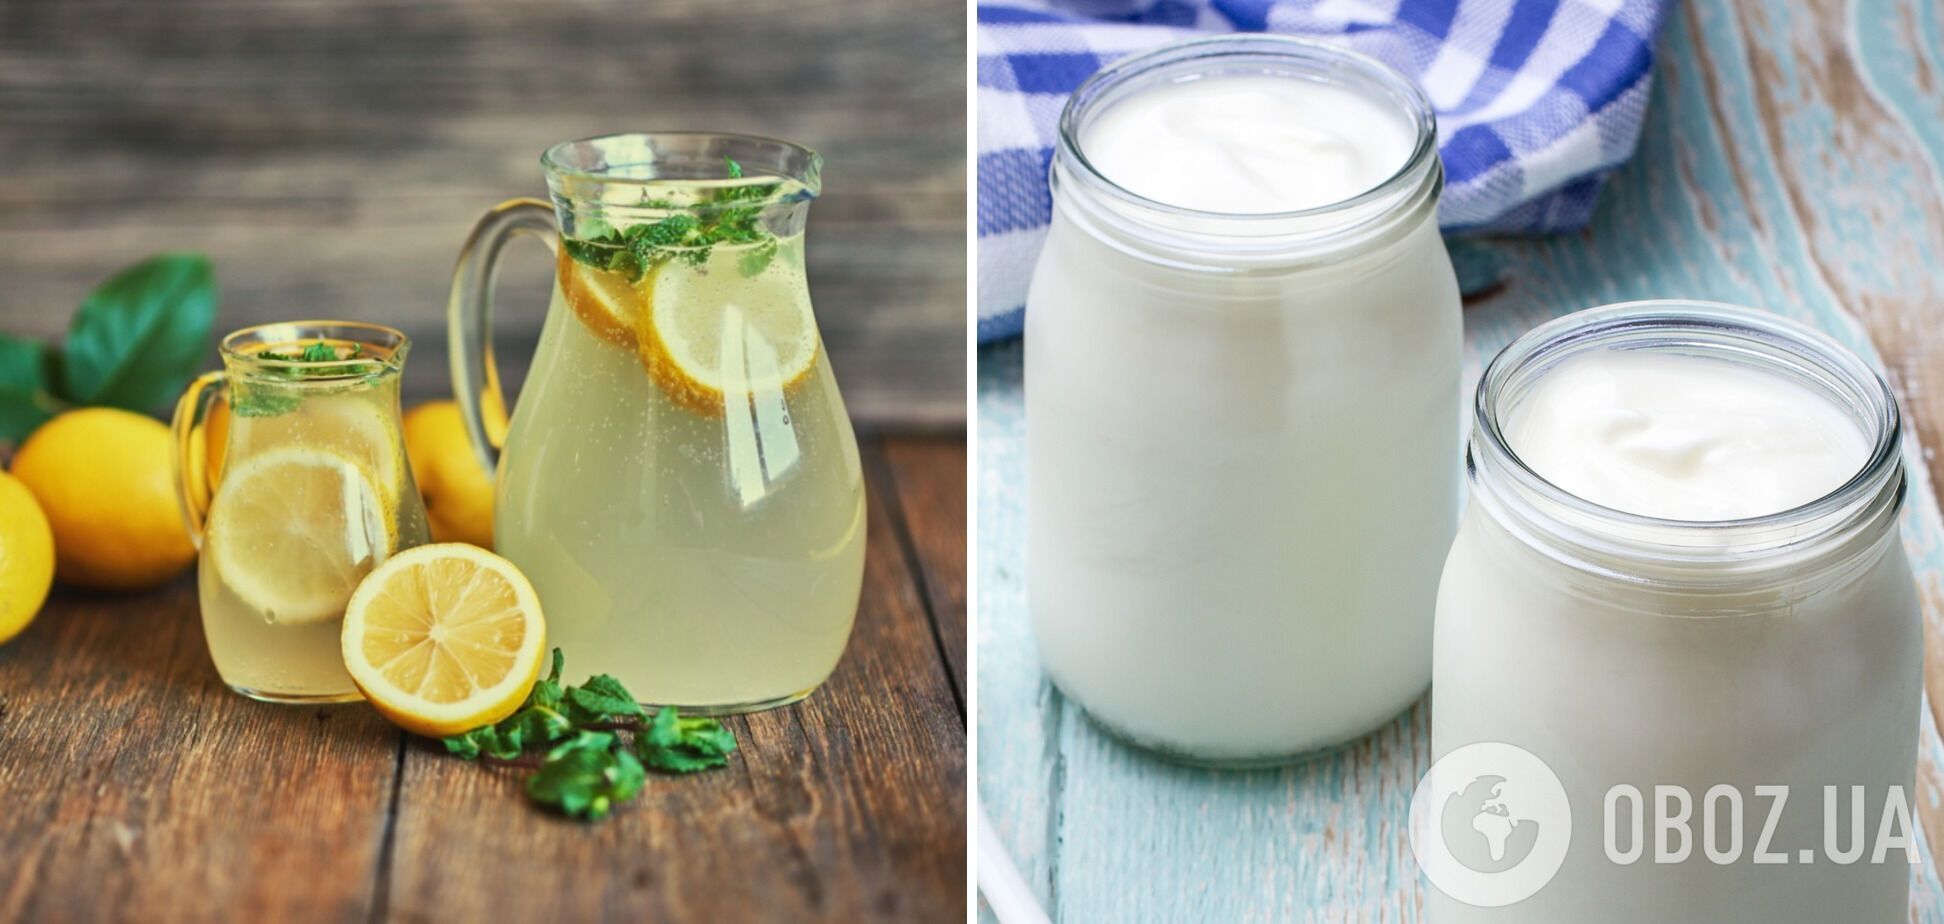 Лимонад и молоко вызывают нарушение обмена веществ и проблемы с кишечником